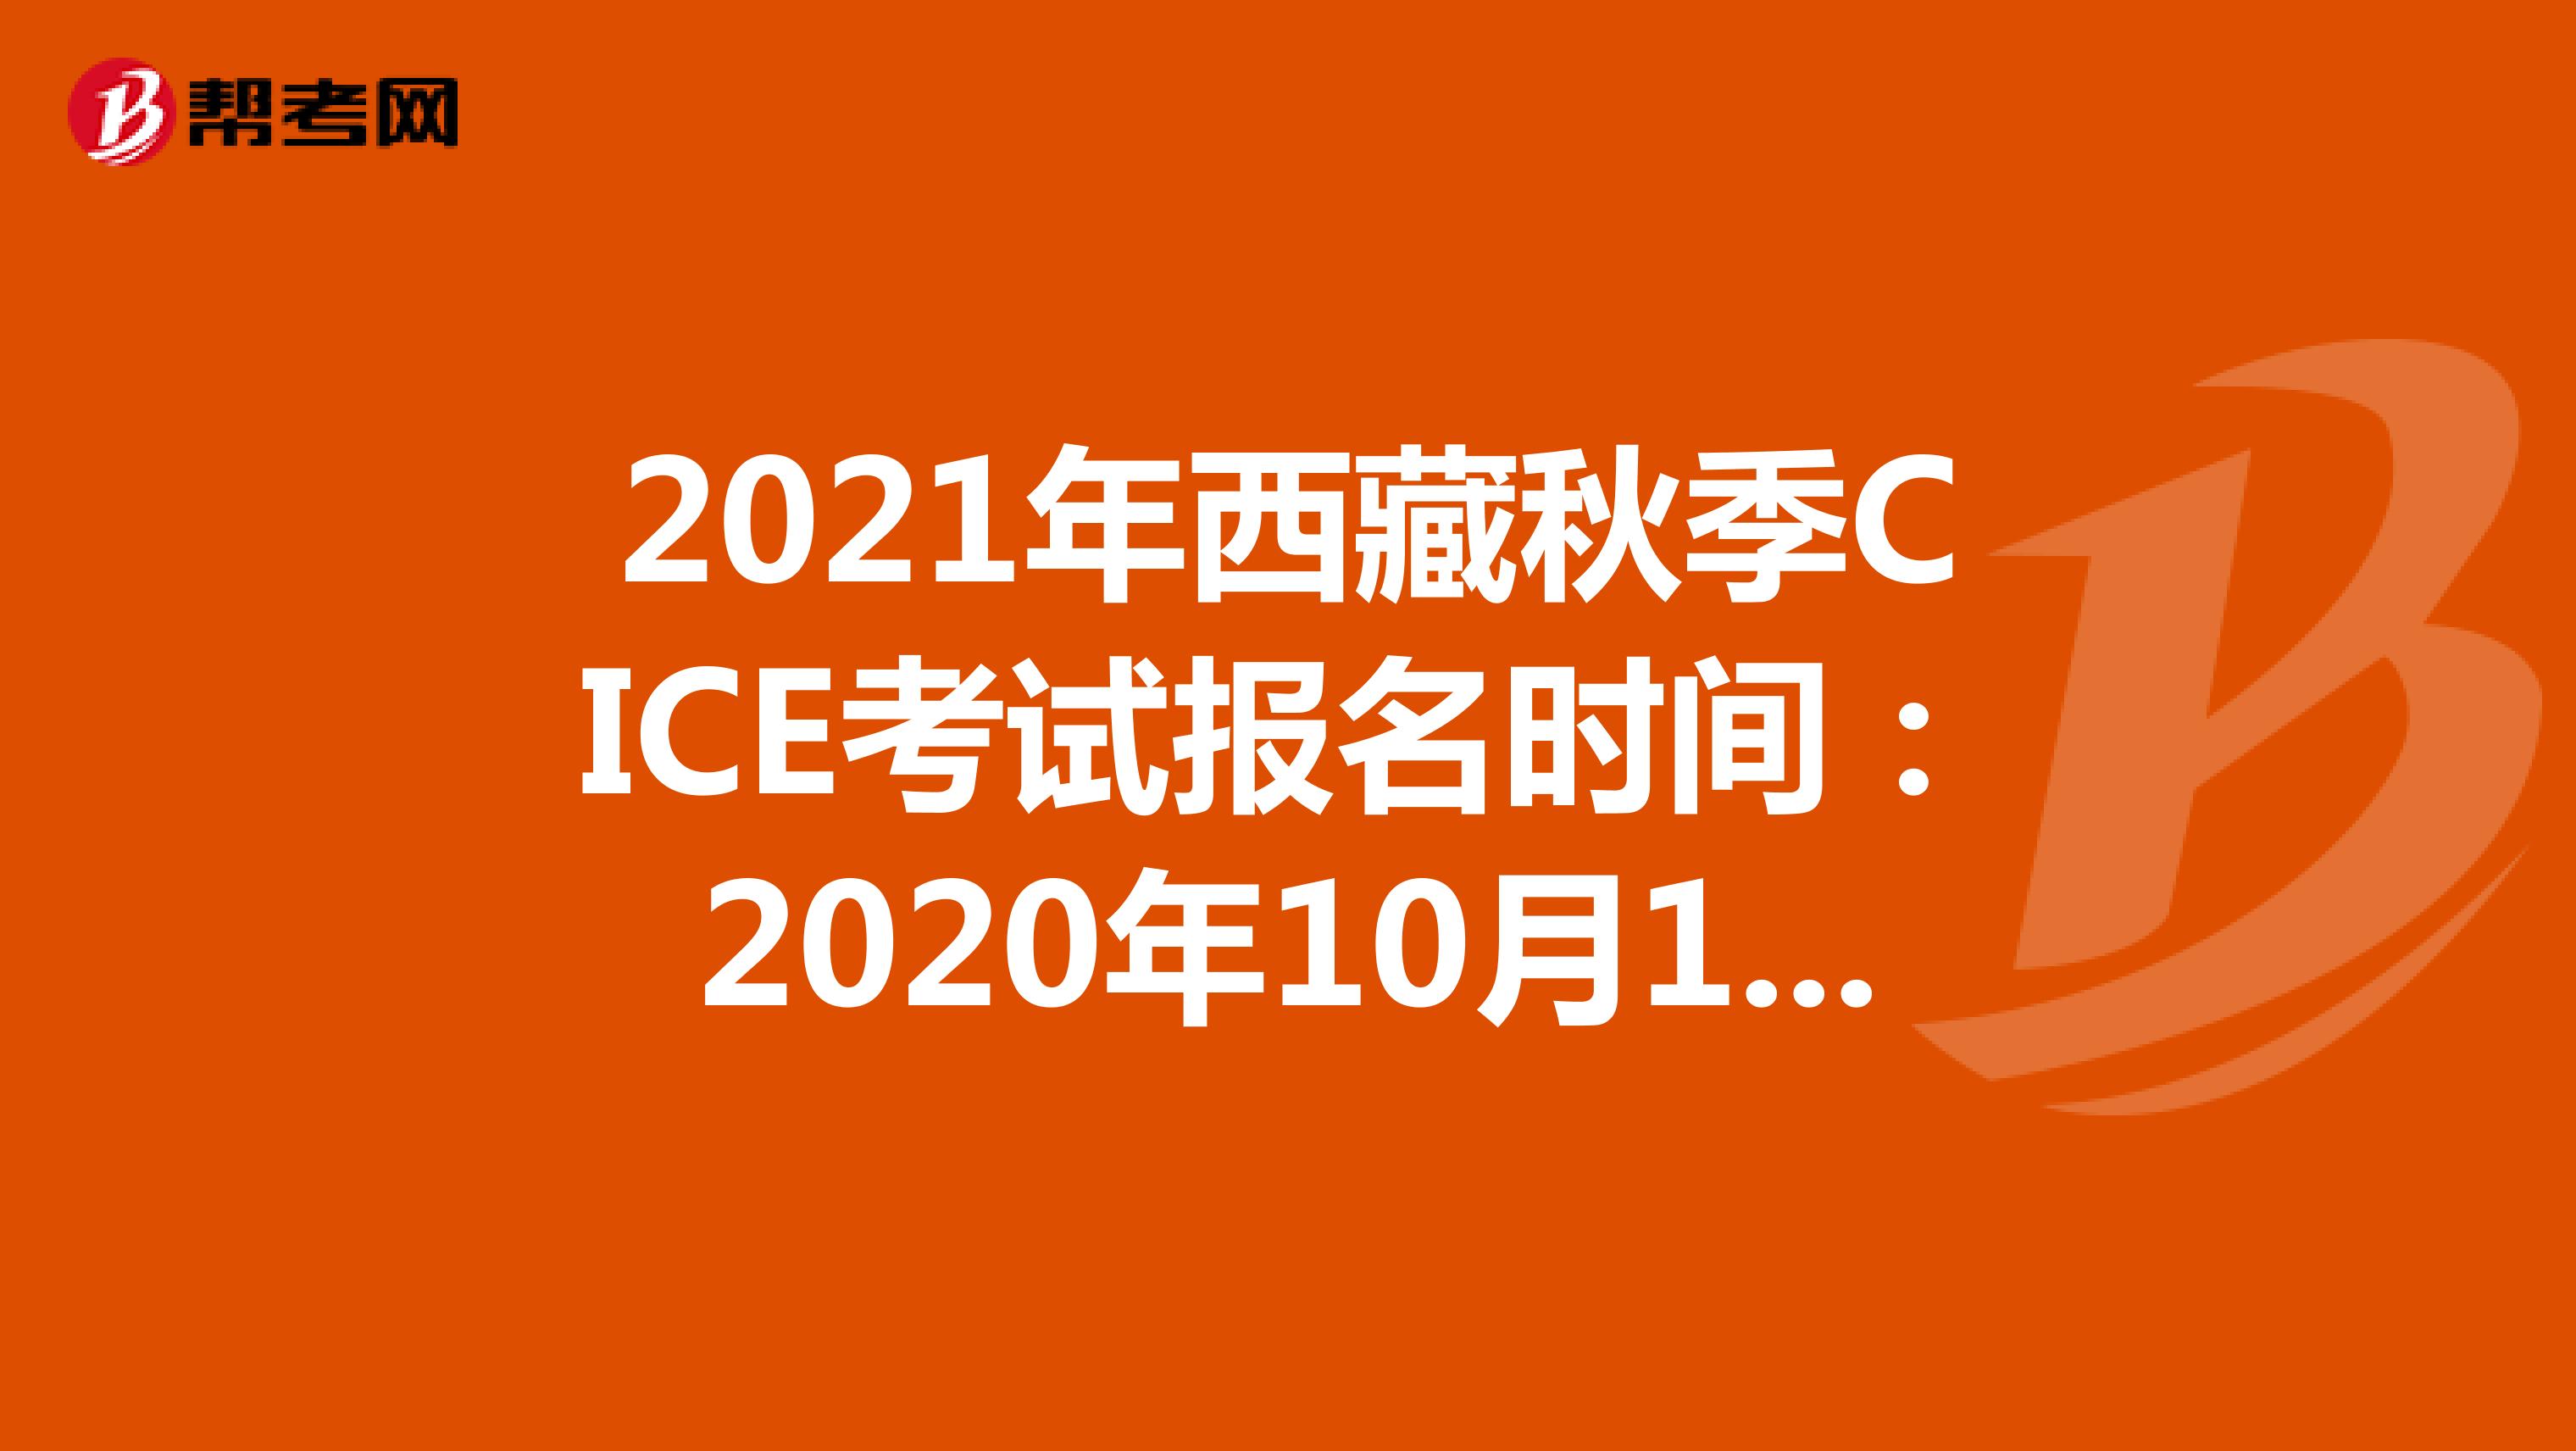 2021年西藏秋季CICE考试报名时间：2020年10月19日-2021年8月31日